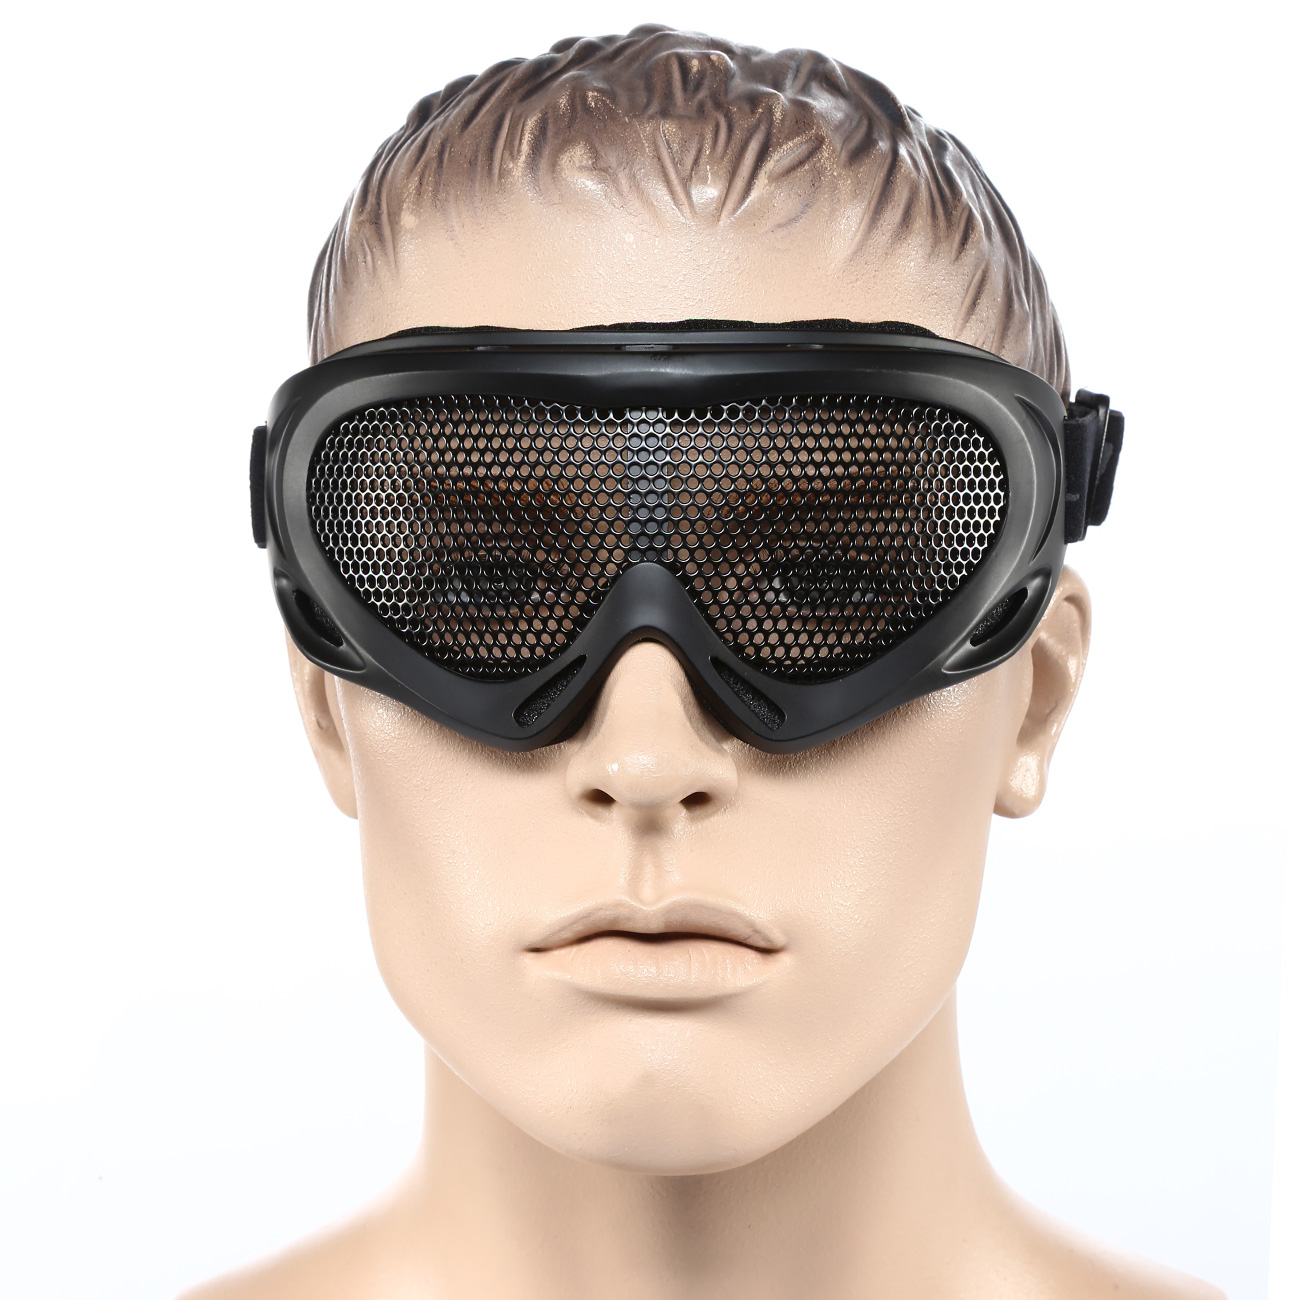 Nuprol Brille Pro Mesh Eye Protection Airsoft Gitterbrille schwarz Bild 4